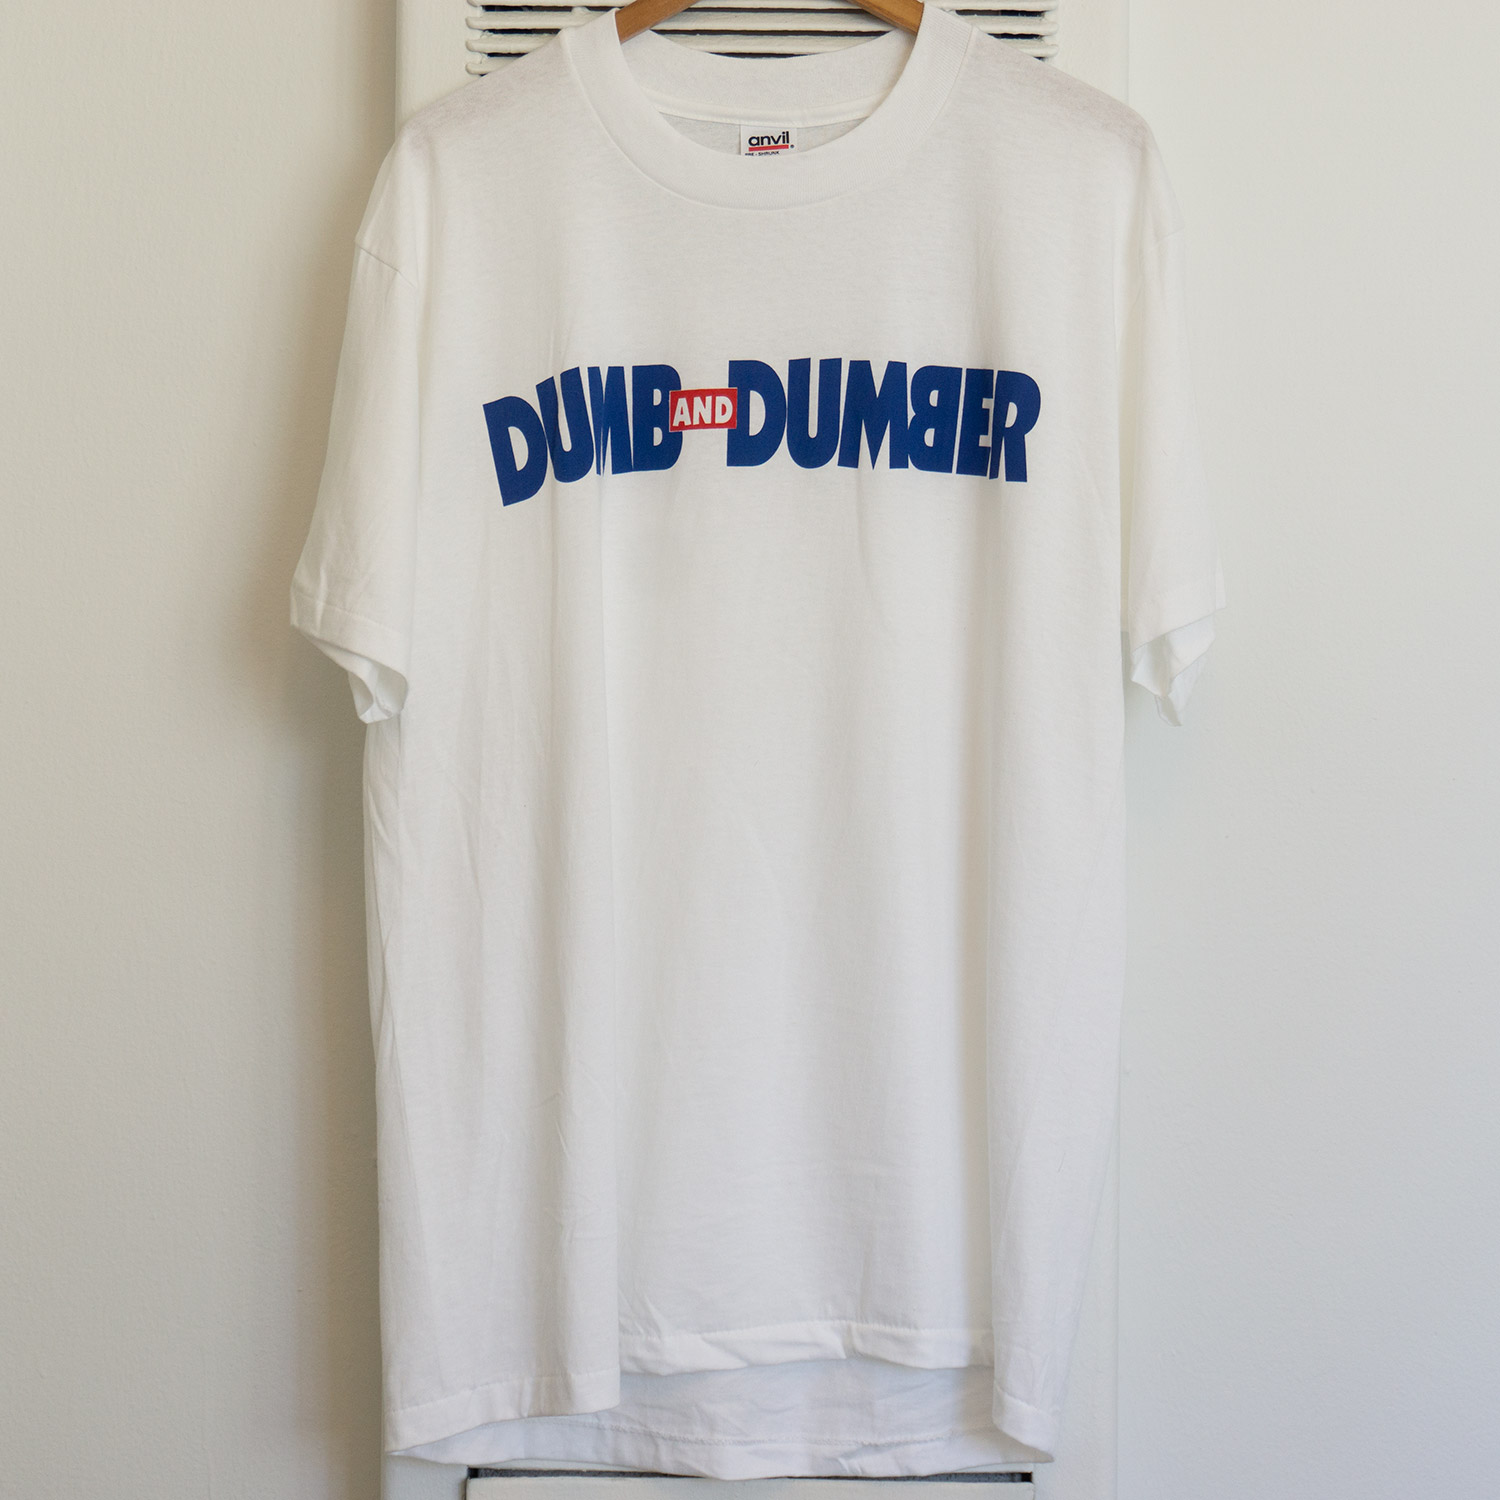 Dumb and Dumber T-shirt